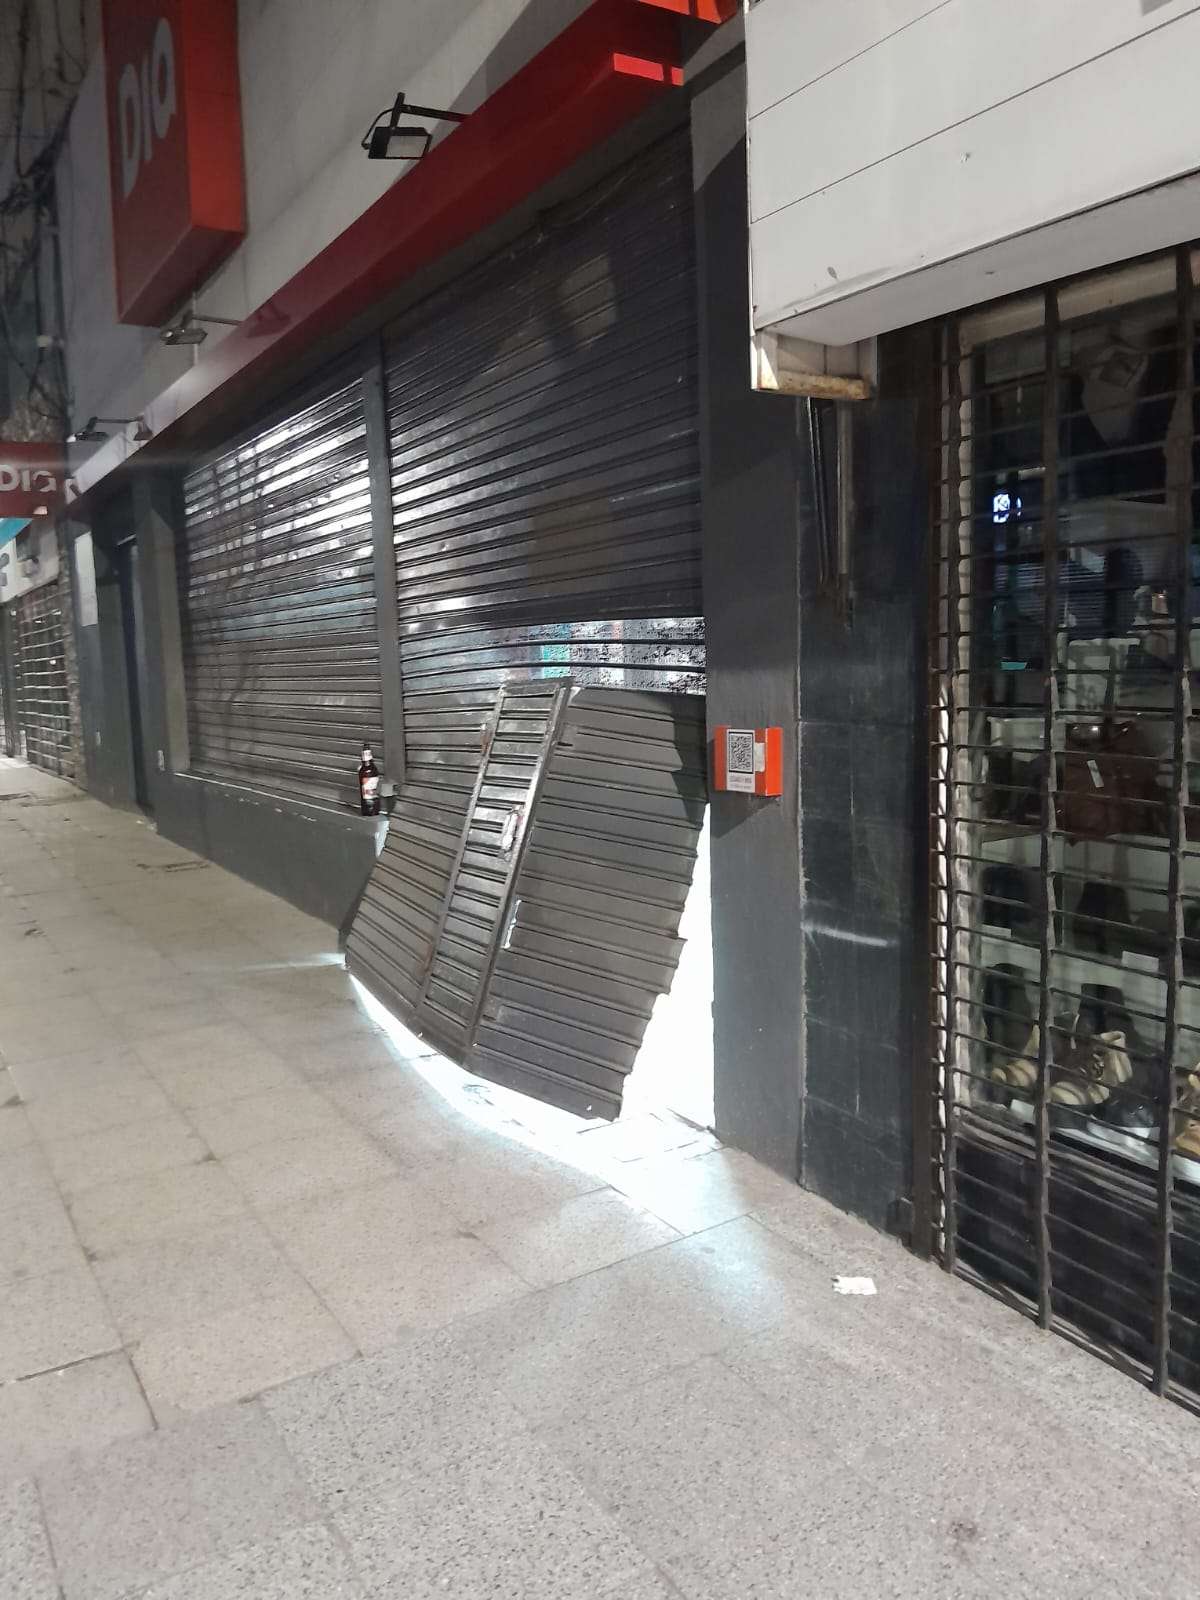 Violentó la persiana de un supermercado y se llevó mercadería